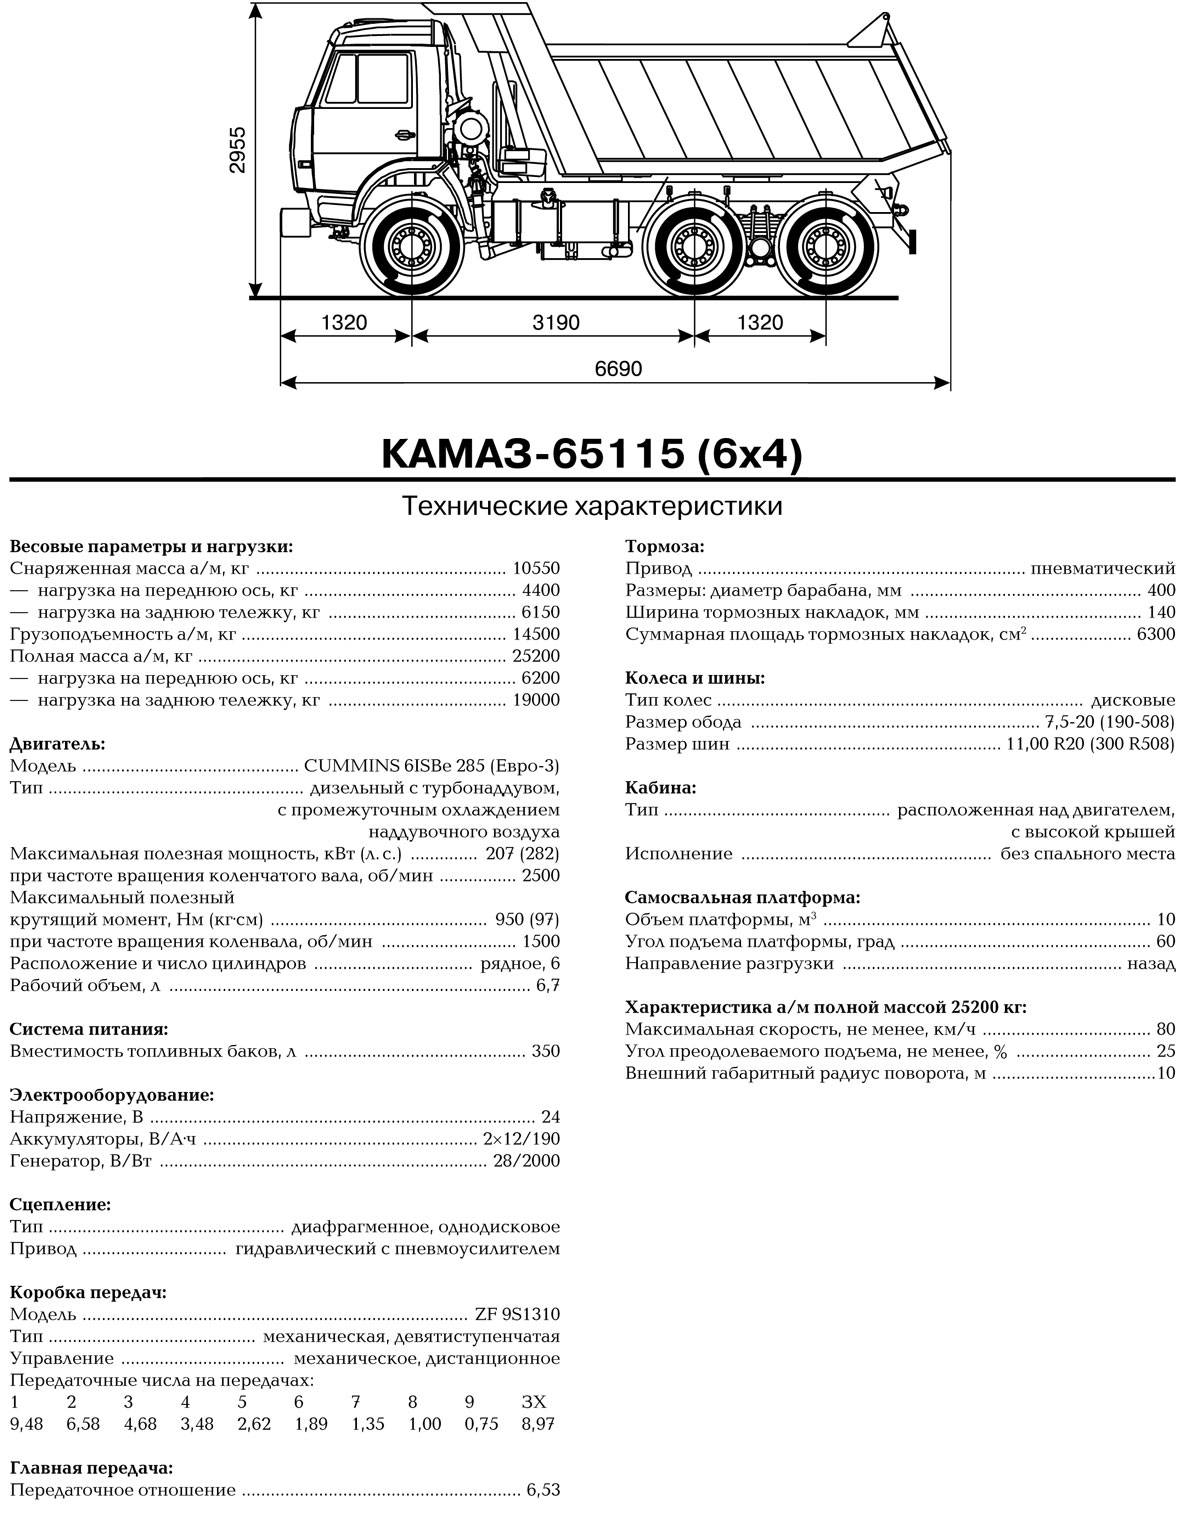 Камаз 65115 грузоподъемность. КАМАЗ 65115 самосвал технические характеристики. КАМАЗ 65115 самосвал спецификация. ТТХ КАМАЗ 65115 самосвал. КАМАЗ 65115 технические характеристики технические.